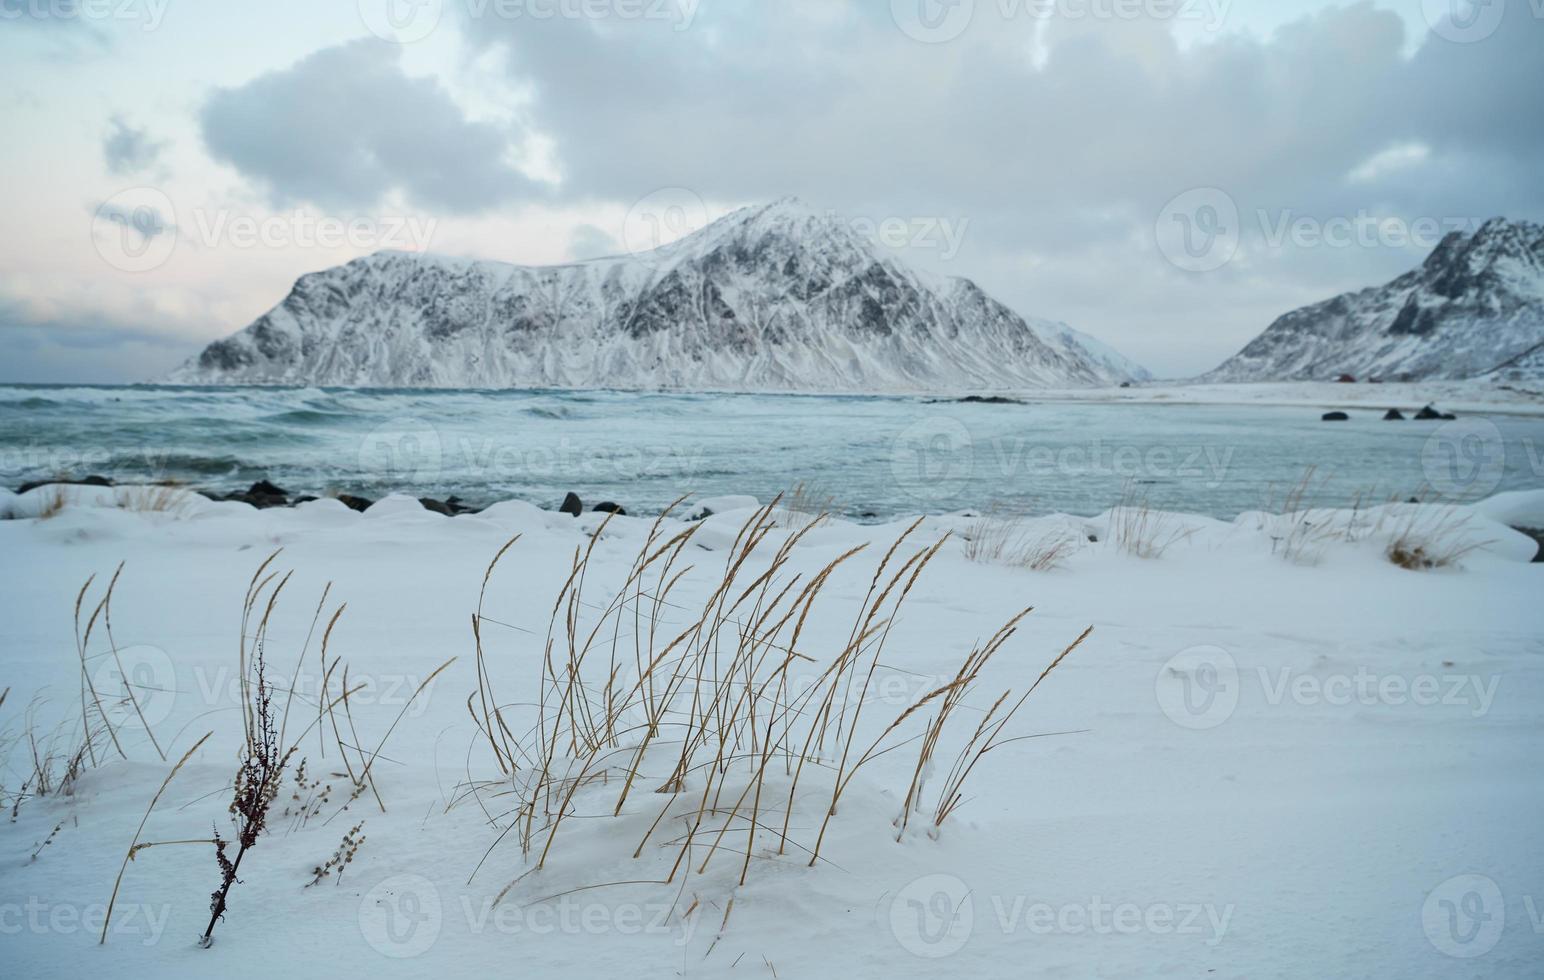 Noorse kust in de winter met sneeuw slecht bewolkt weer foto